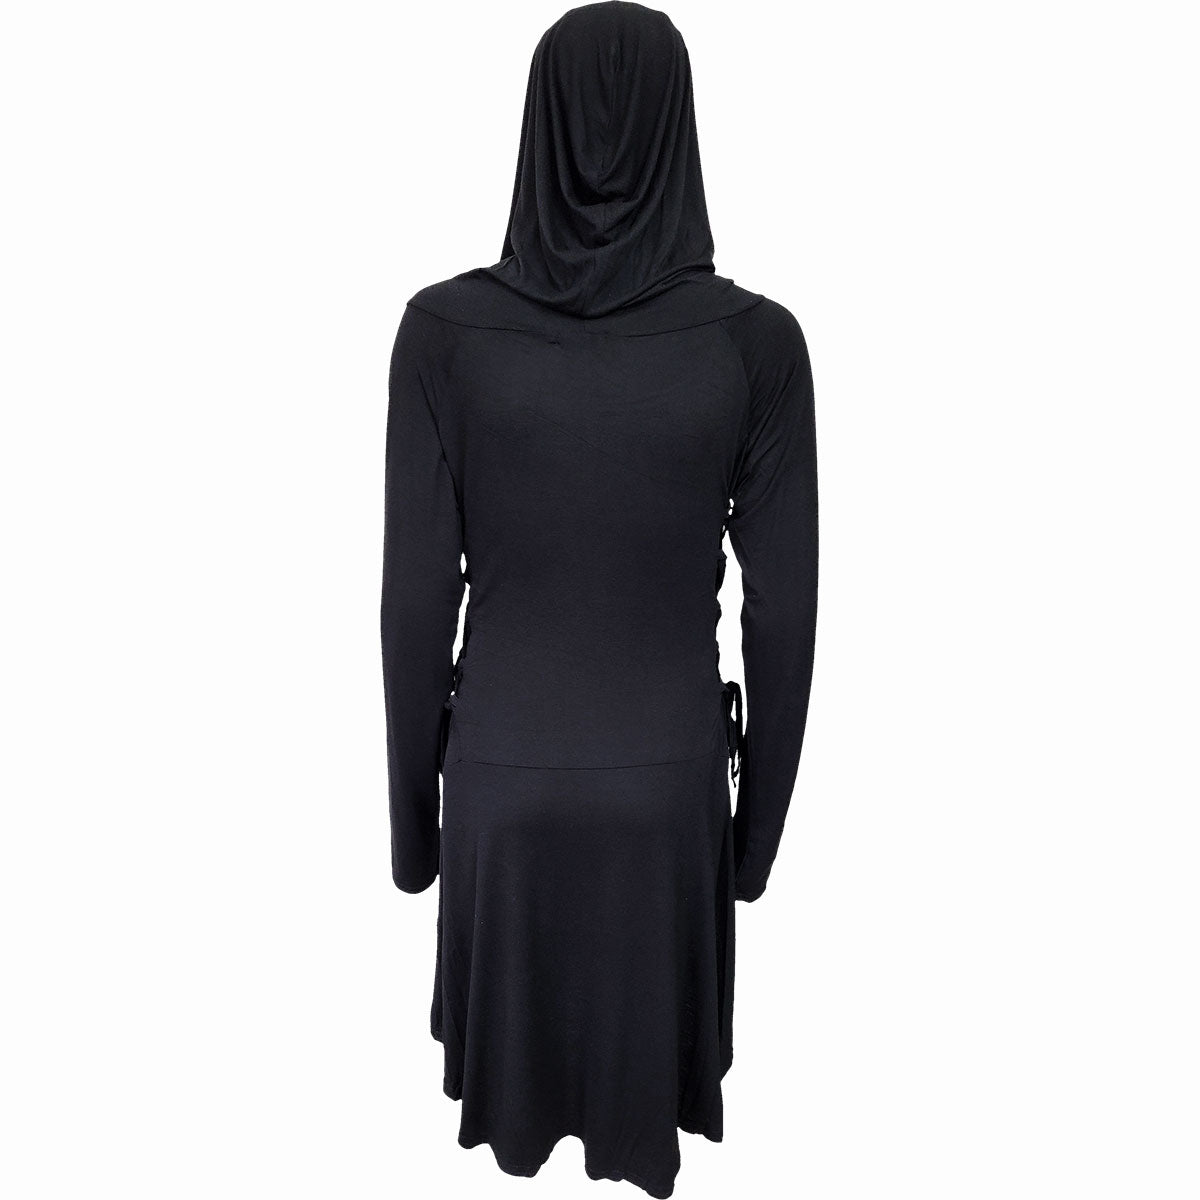 GOTHIC ELEGANCE - Gotycka sukienka z kapturem Black Widow